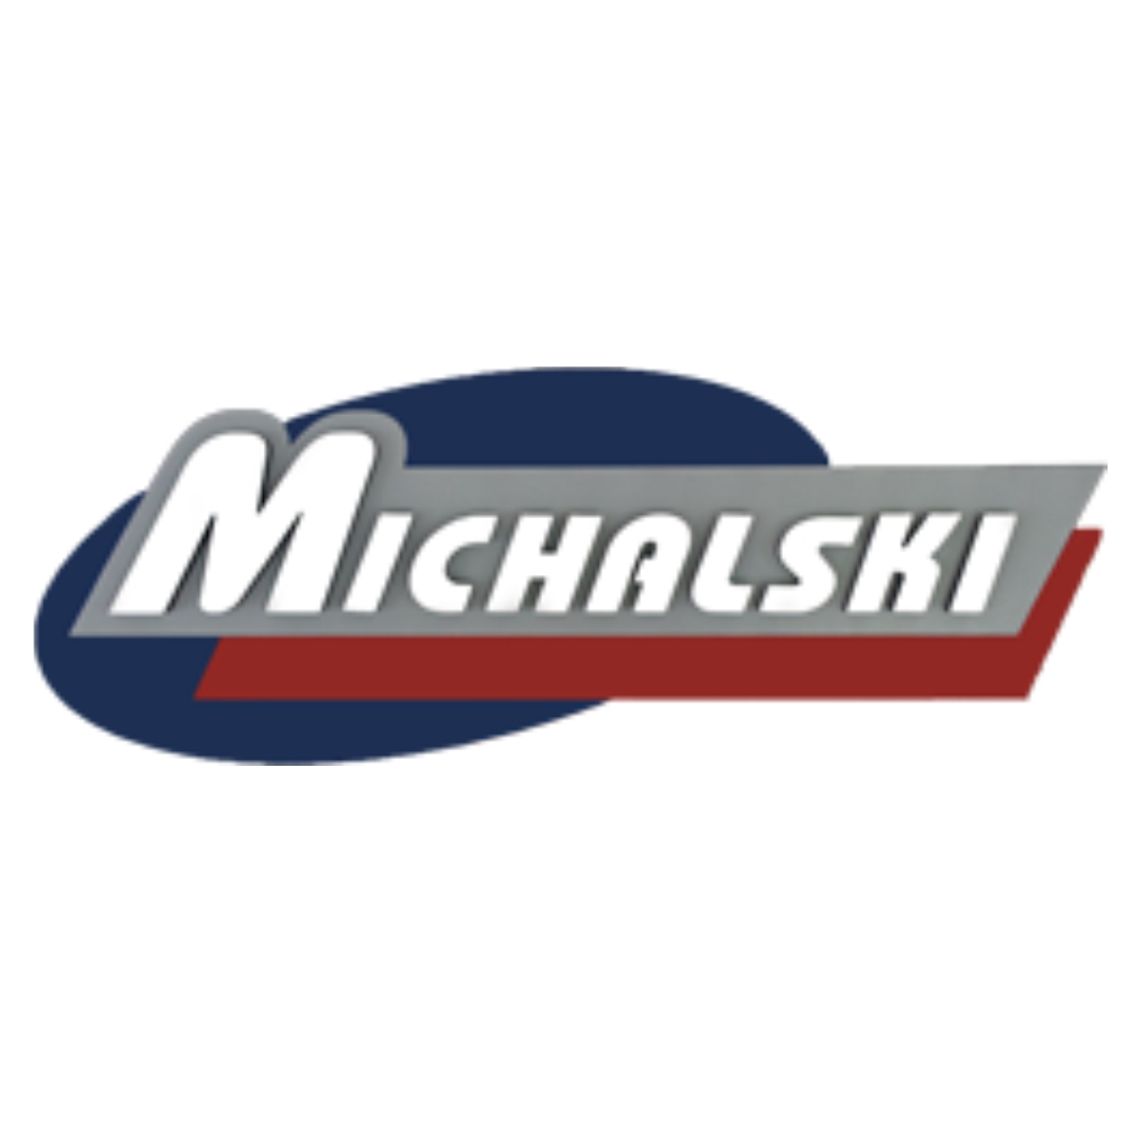 Serwis Michalski - audycje motoryzacyjne